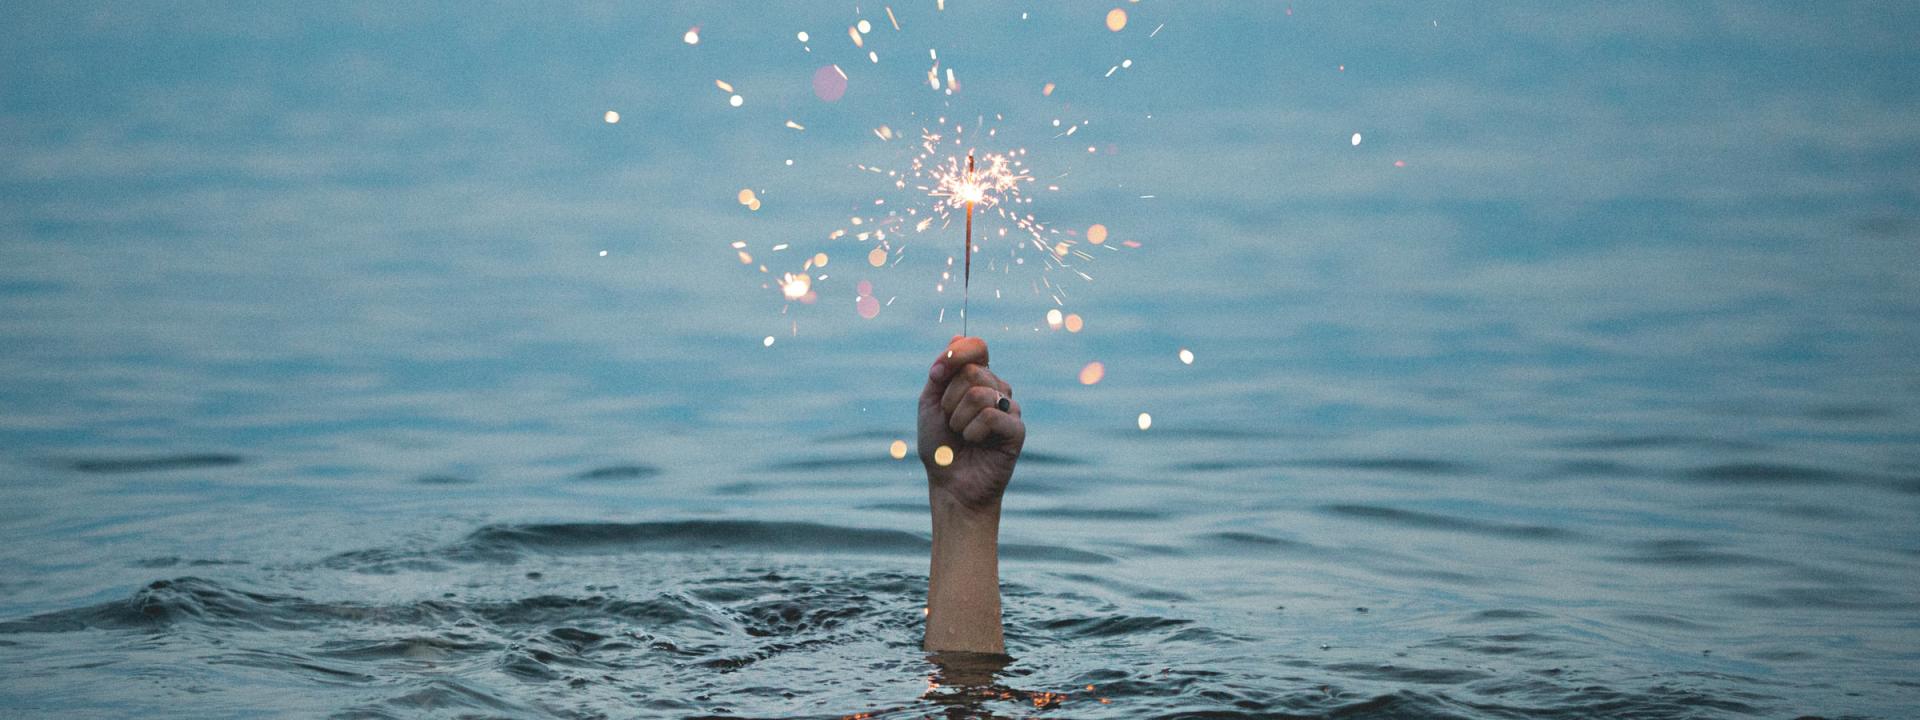 En hand sticker upp ur vattnet på en sjö, den håller ett brinnande tomtebloss.